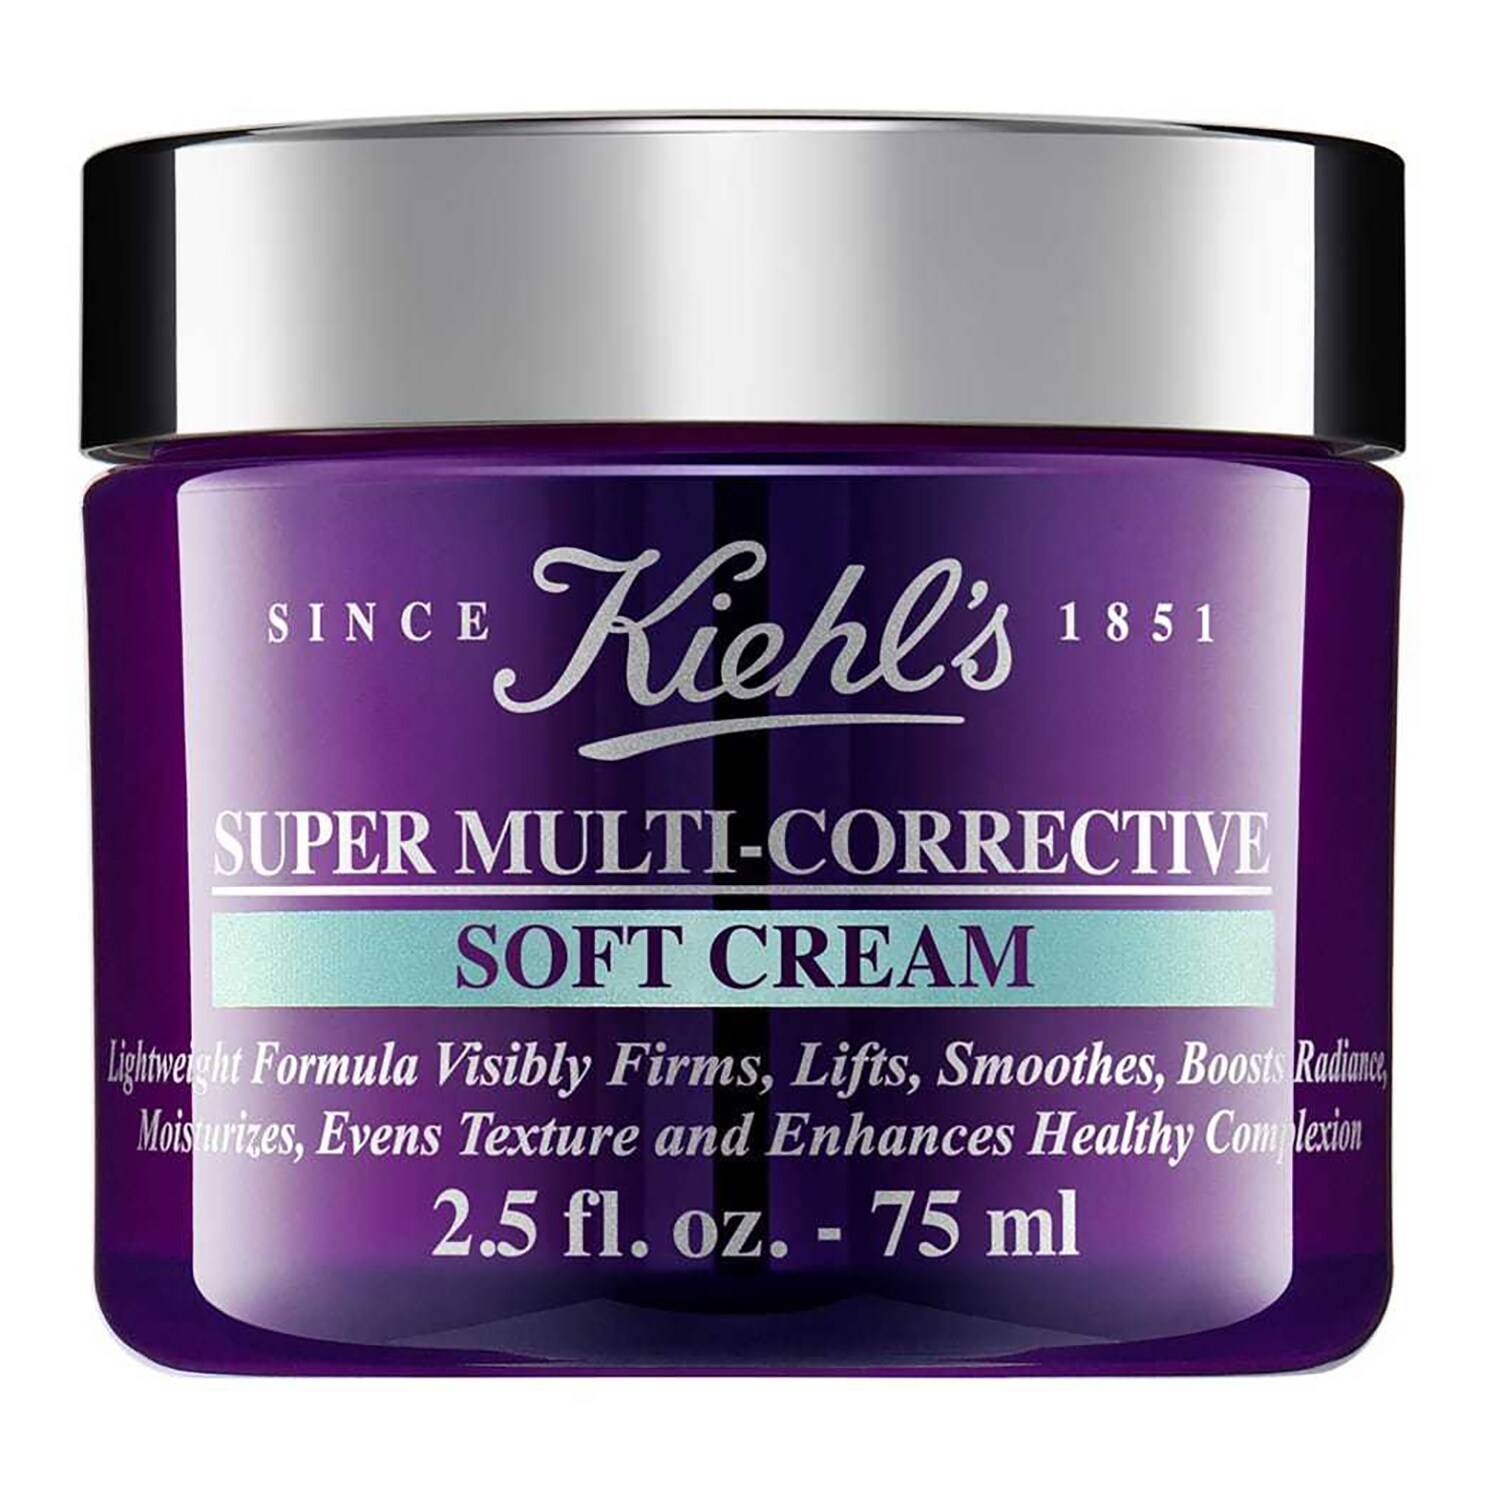 KIEHL'S SINCE 1851 Super Multi Corrective Soft Cream 75ml